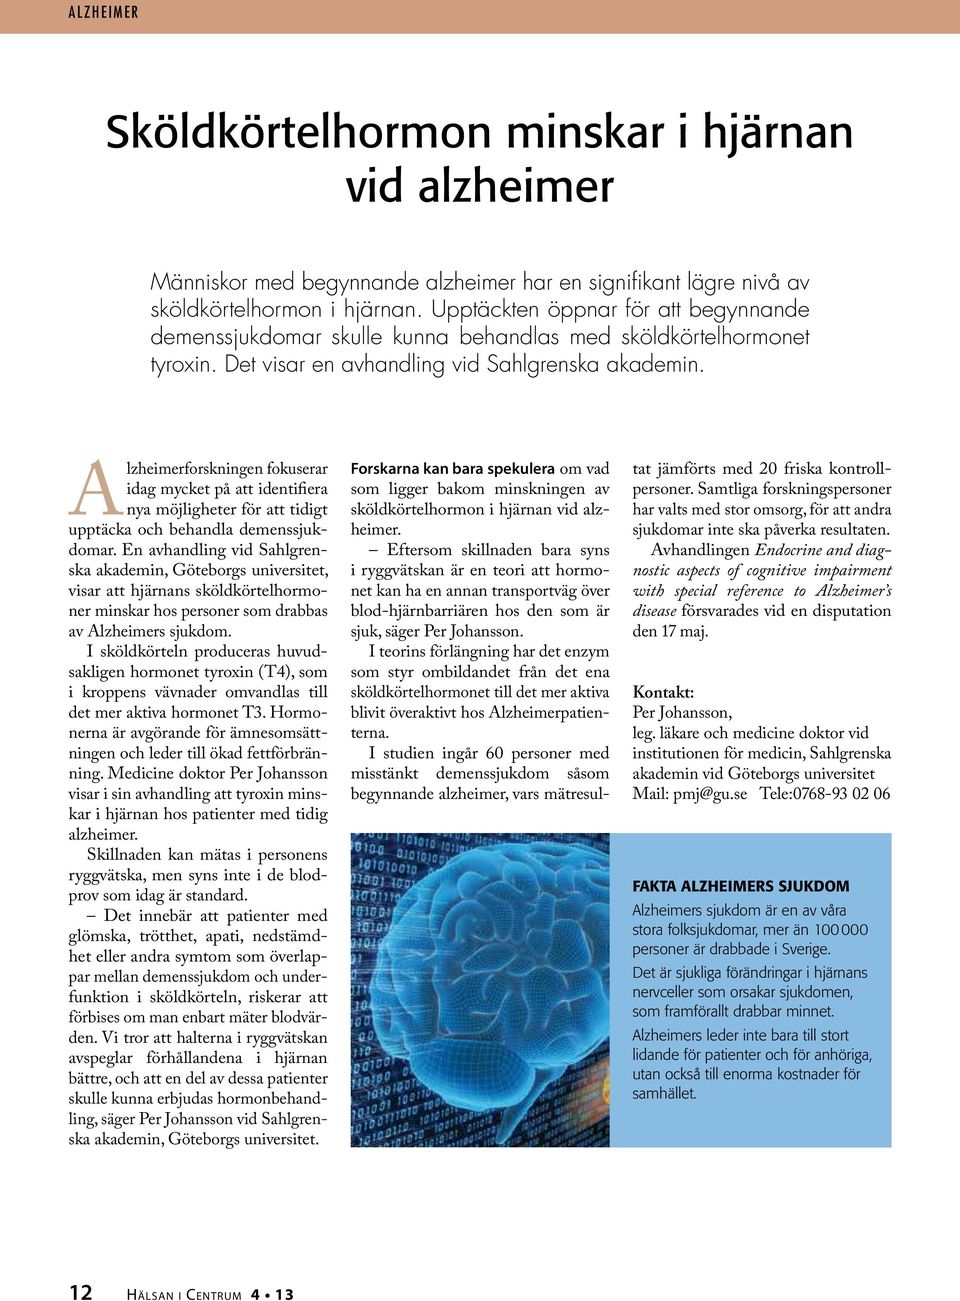 Alzheimerforskningen fokuserar idag mycket på att identifiera nya möjligheter för att tidigt upptäcka och behandla demenssjukdomar.